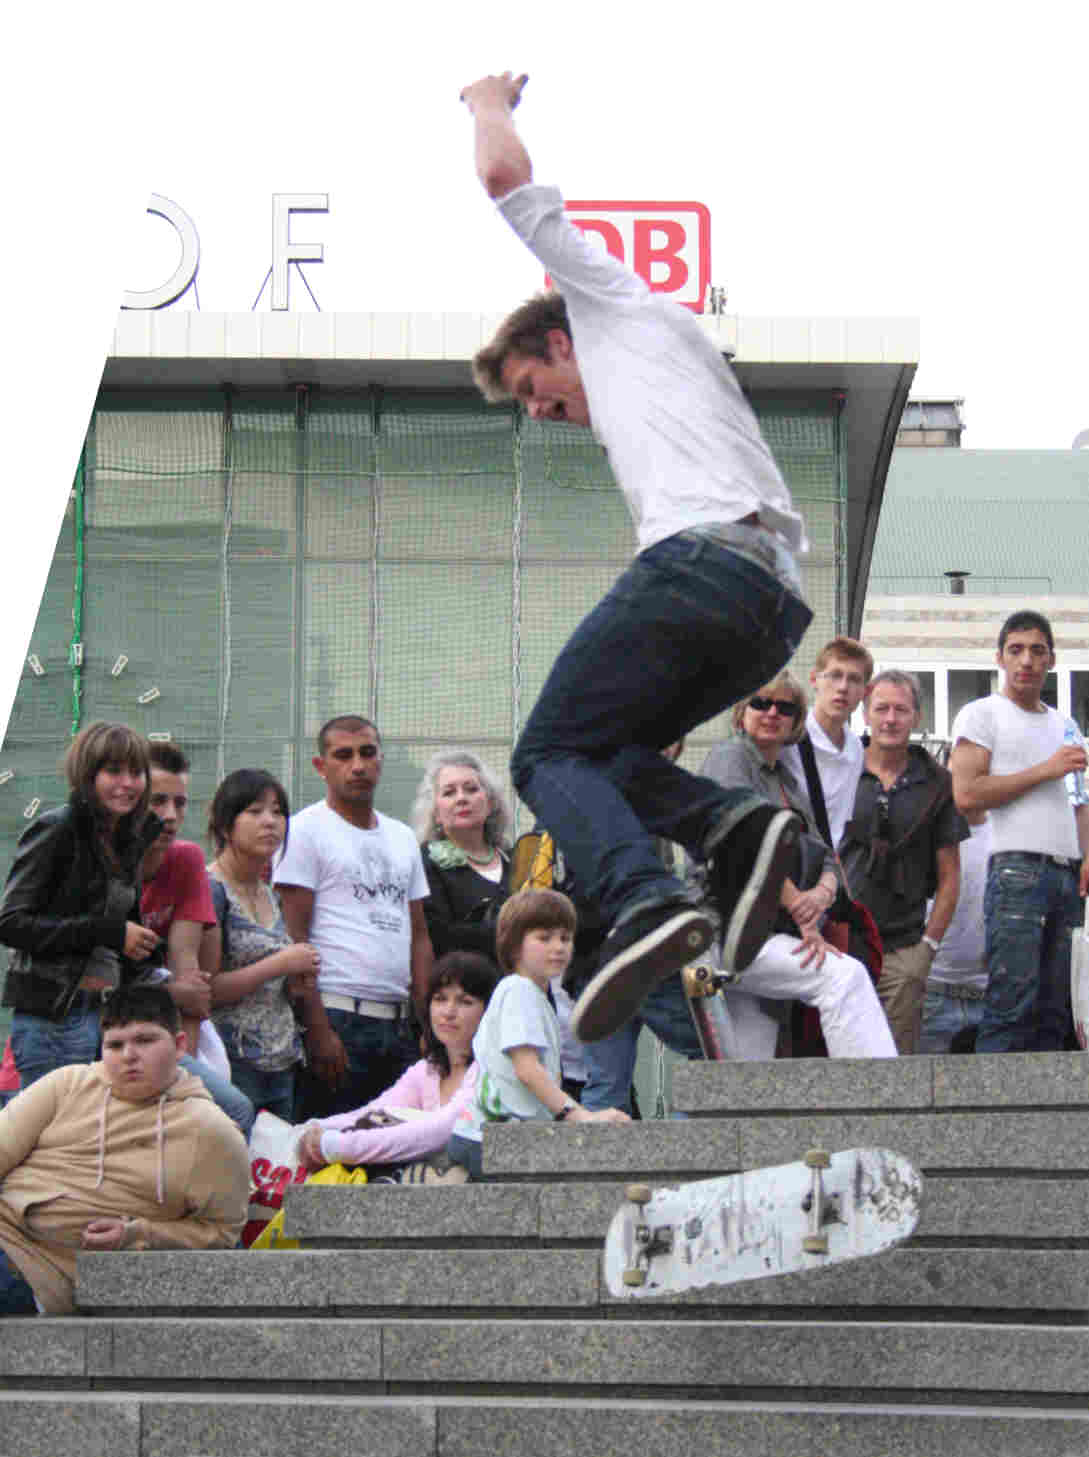 Skateboard daredevil